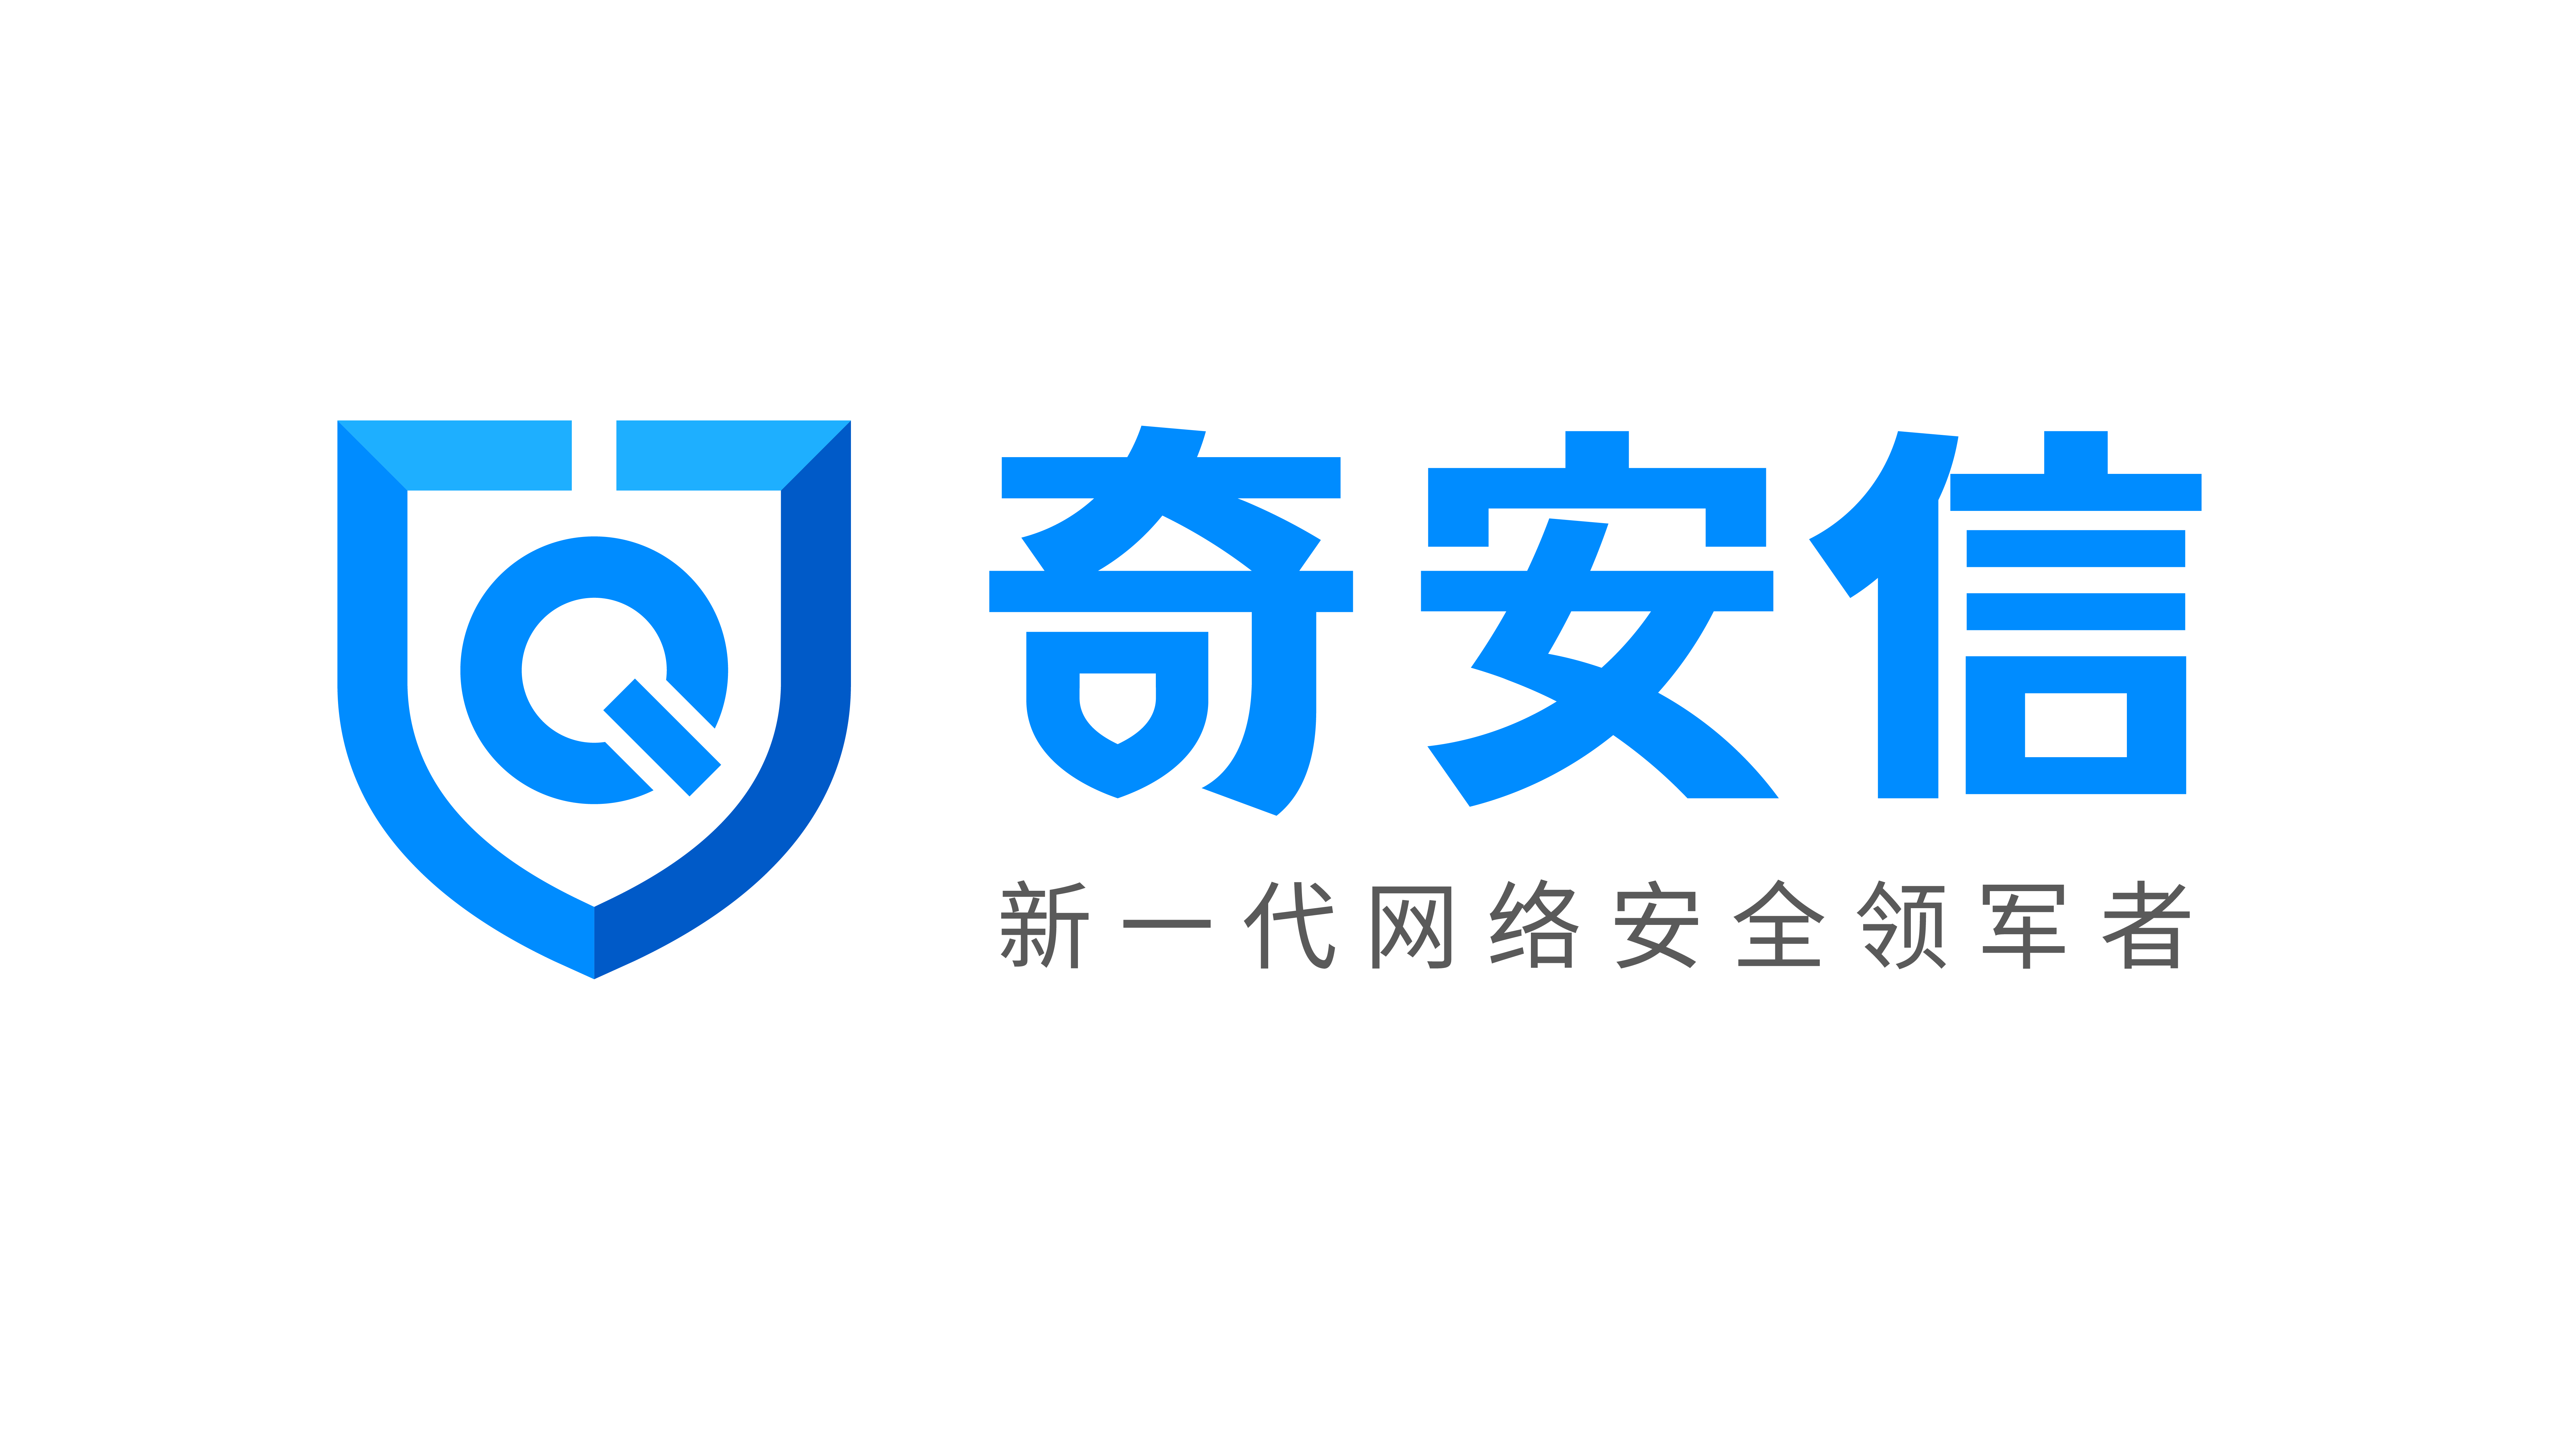 奇安信科技集團股份有限公司(北京奇安信科技有限公司)